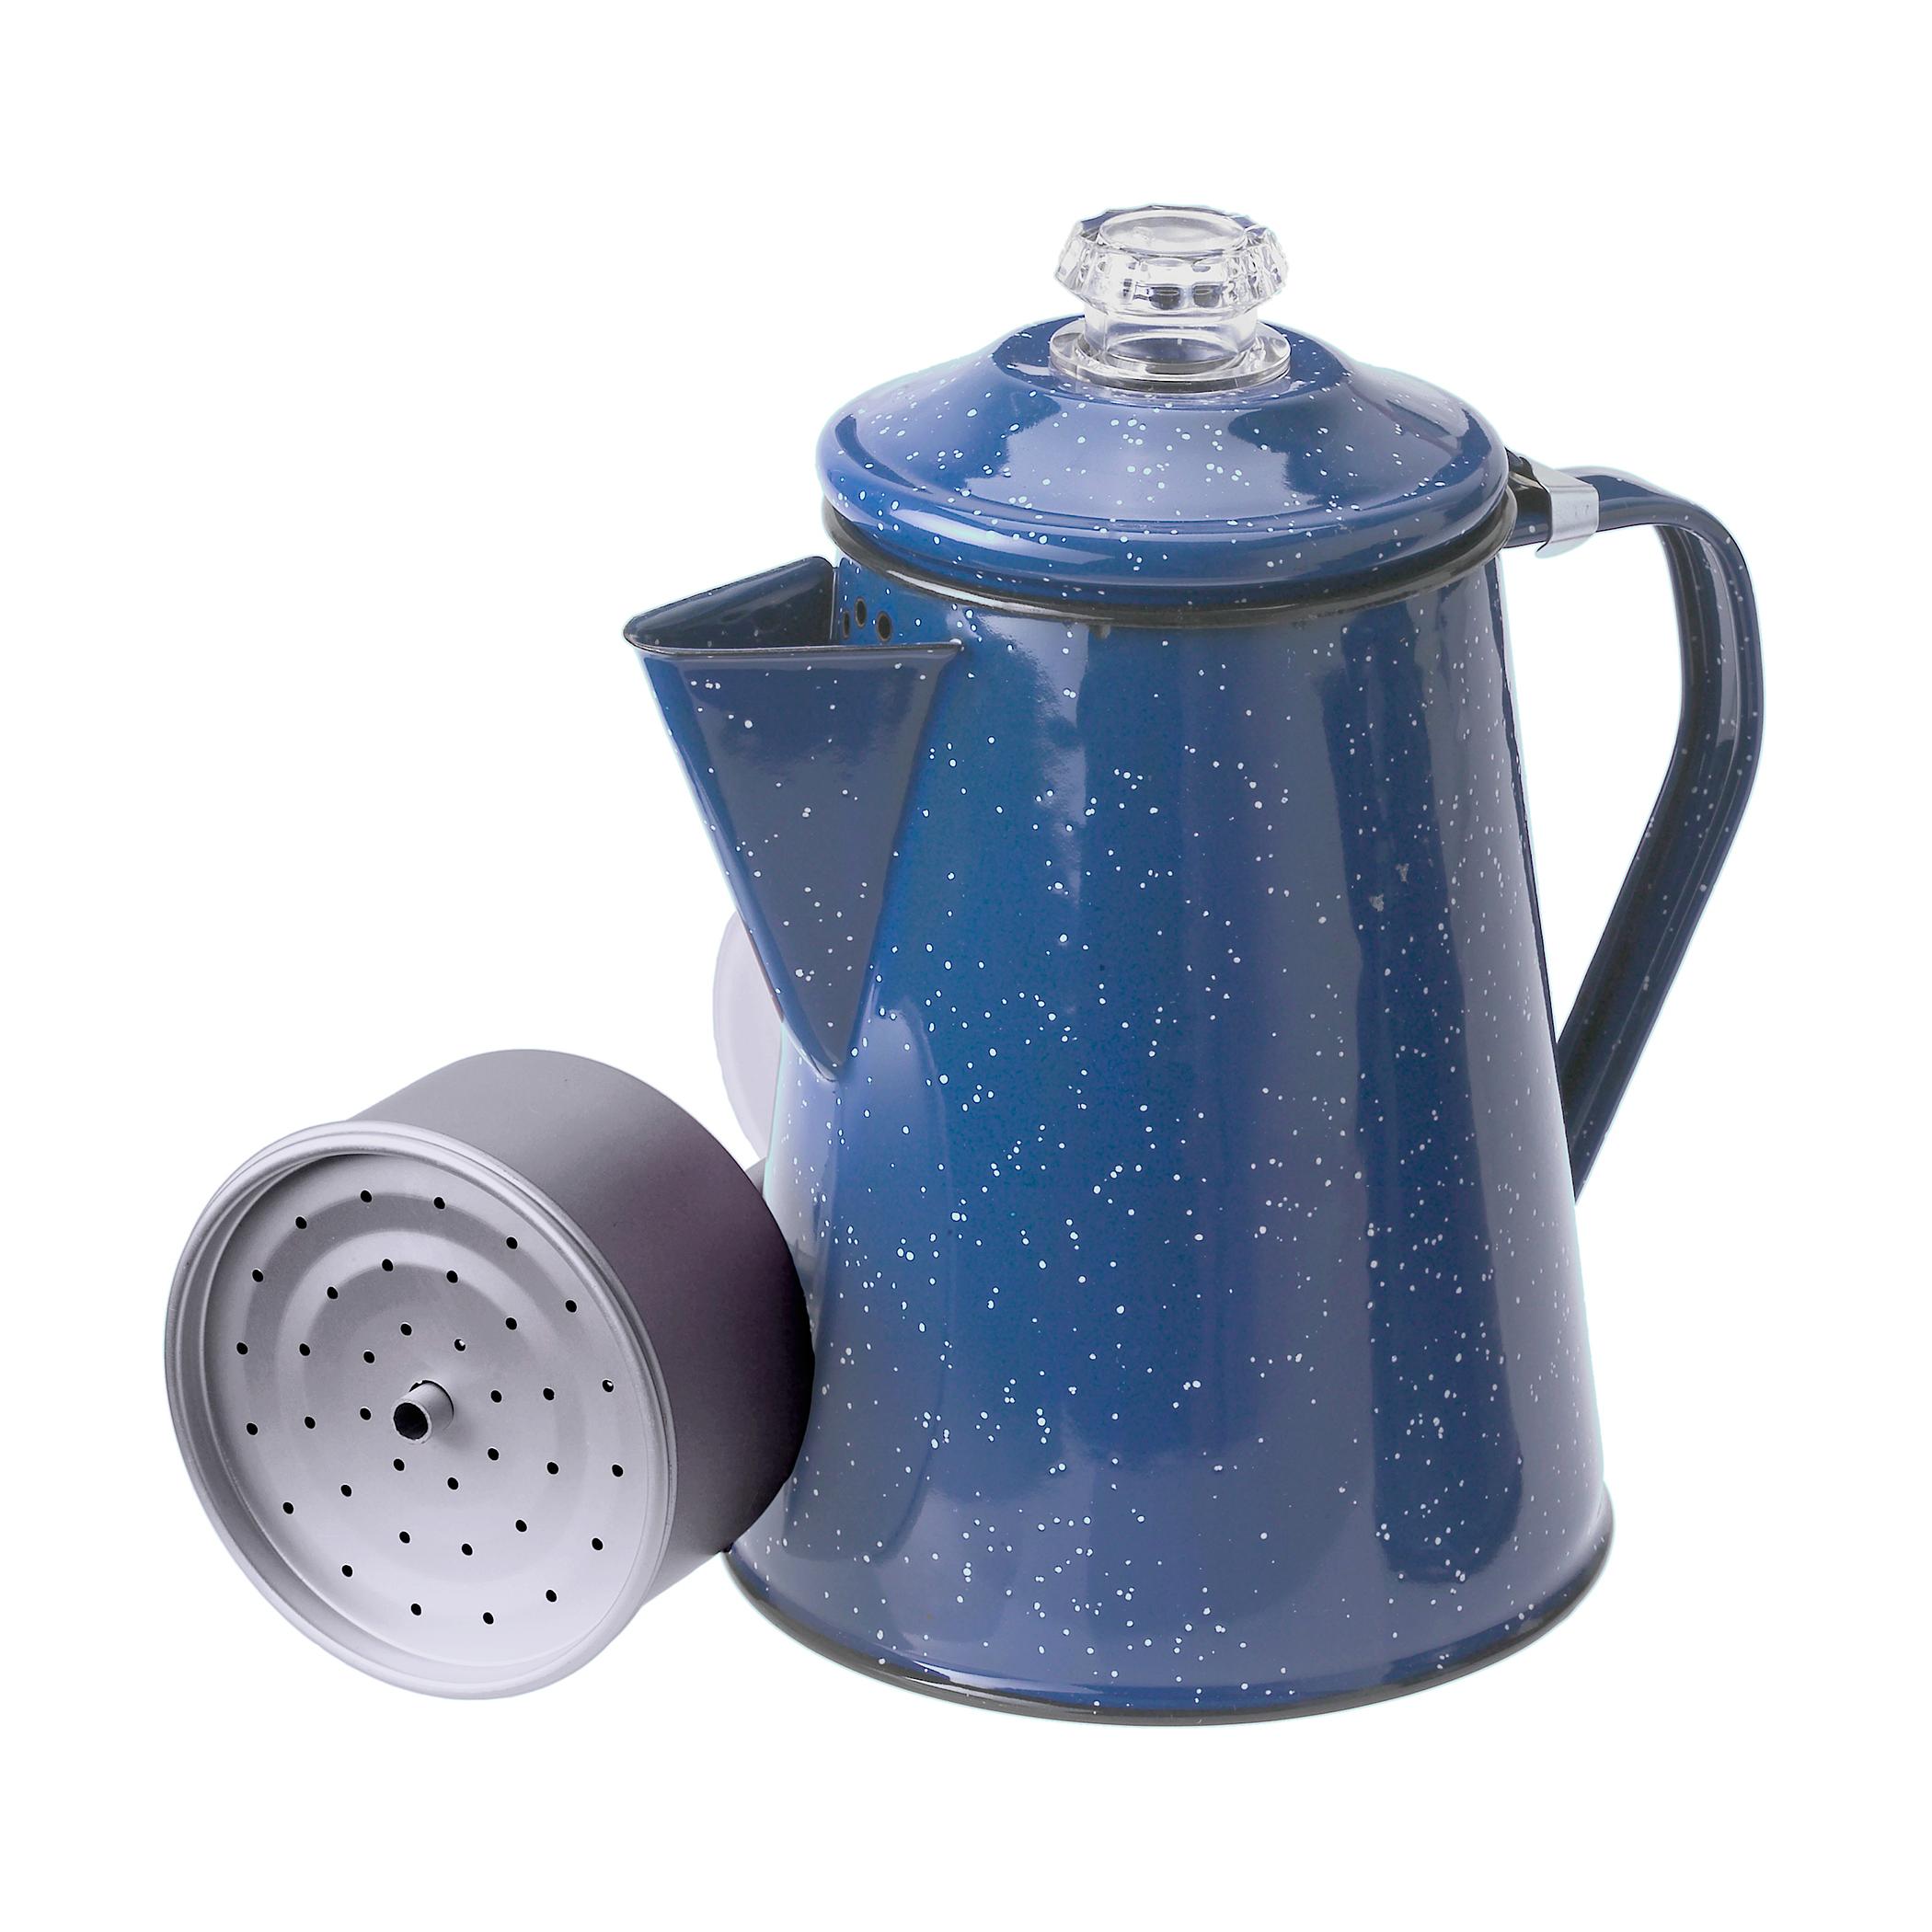  Enamel Percolator - 8 Cup - Blue Speckle